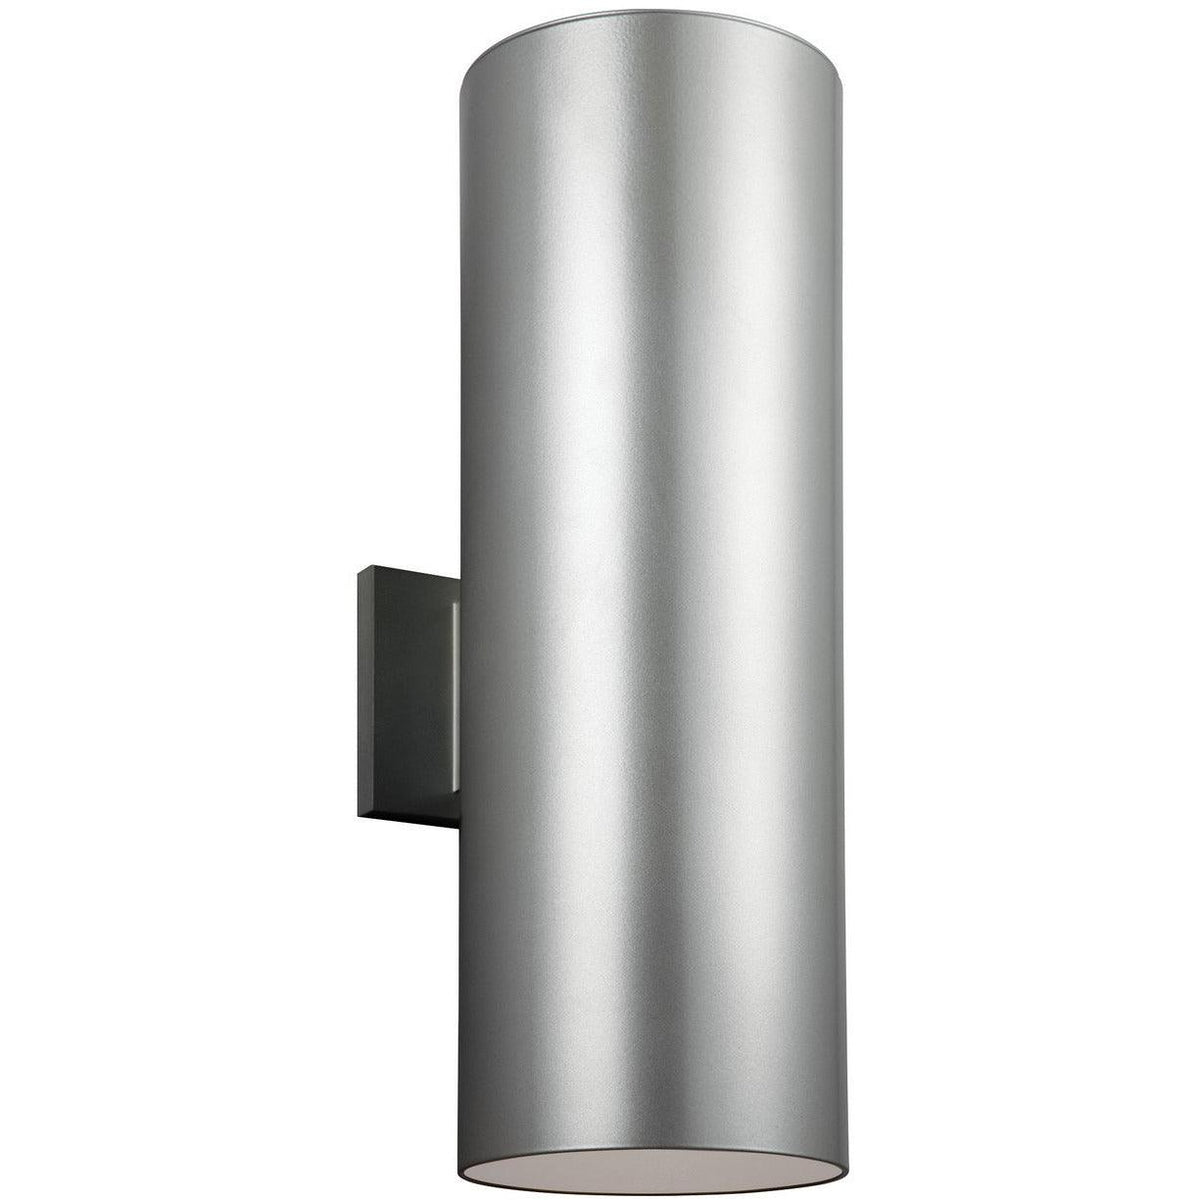 Generation Lighting - Outdoor Cylinders Outdoor Wall Lantern - 8313901EN3-753 | Montreal Lighting & Hardware